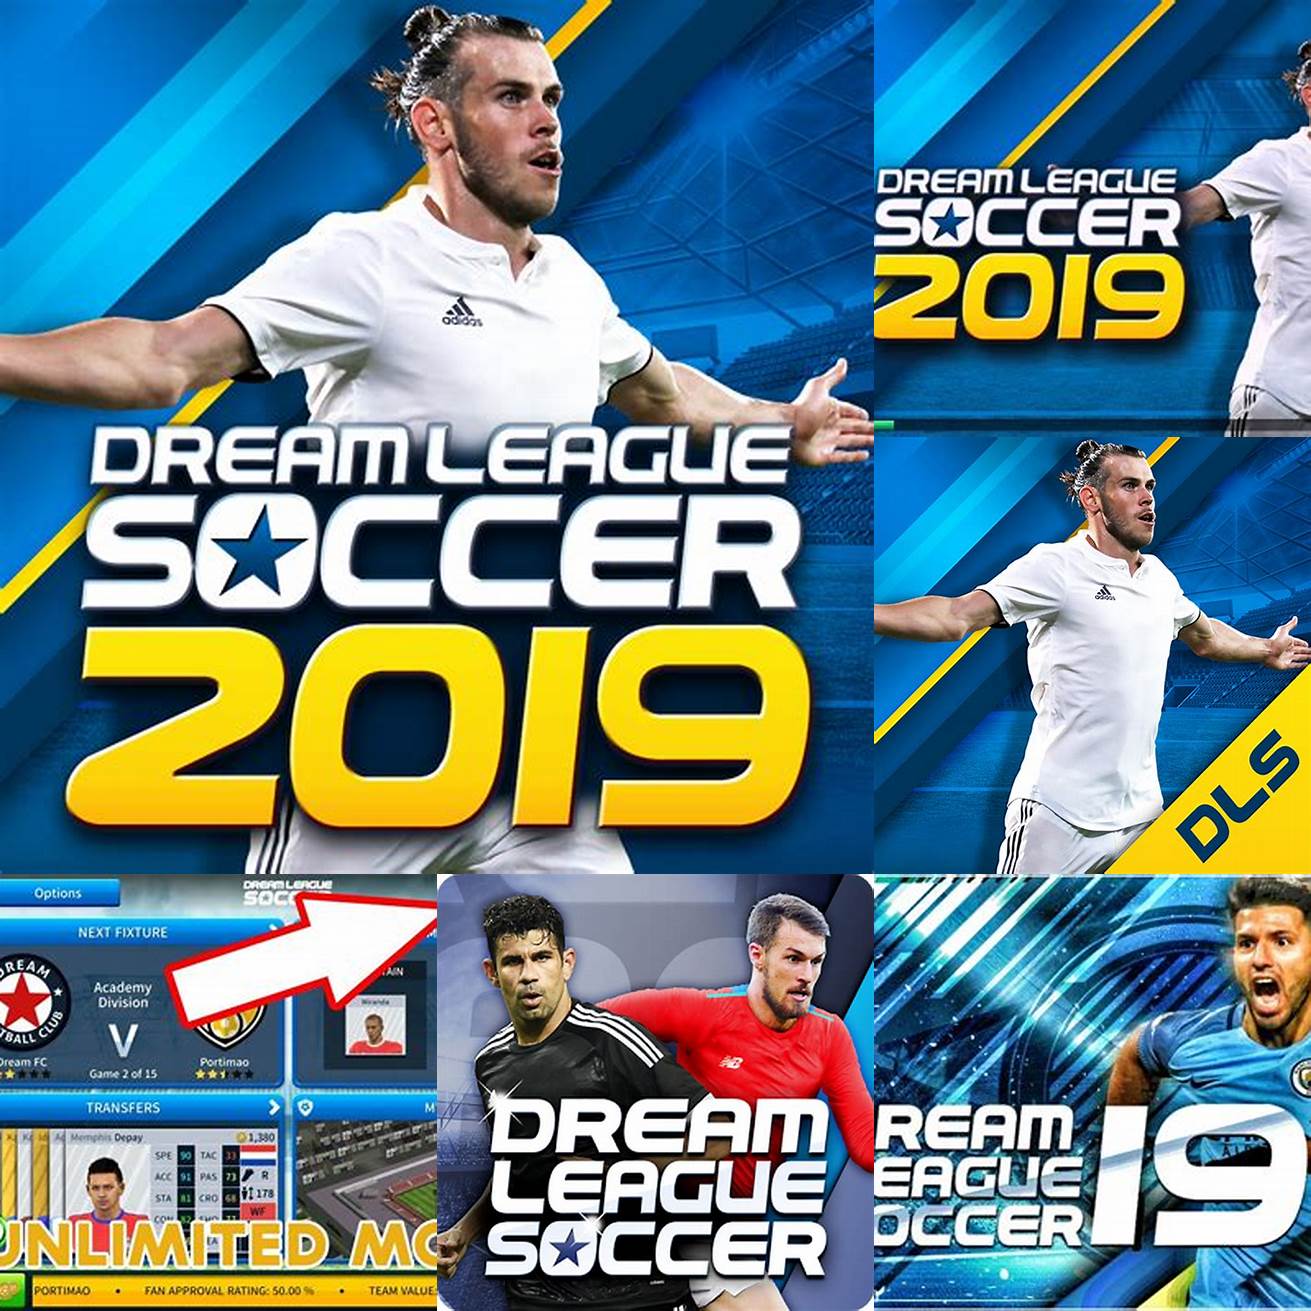 Fitur-fitur Dream League Soccer 2019 Mod APK